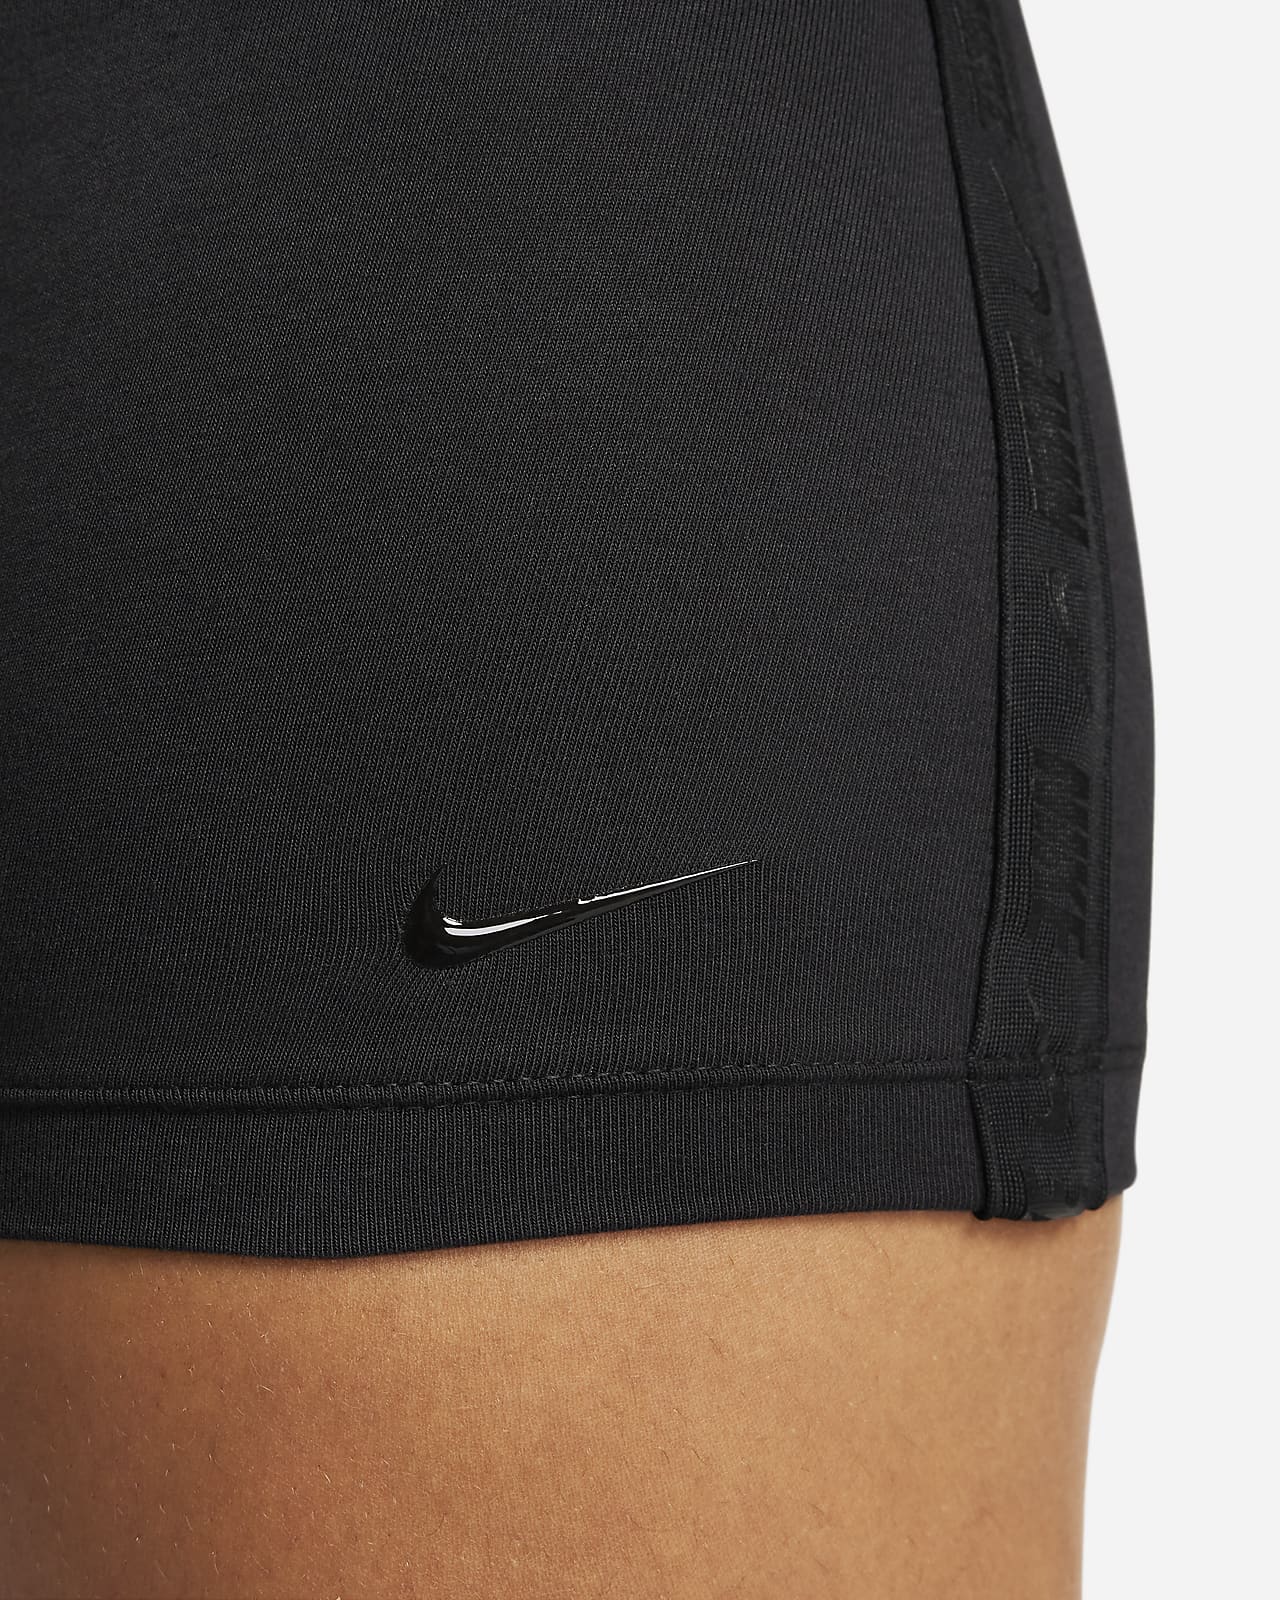 Body para mujer Nike Sportswear